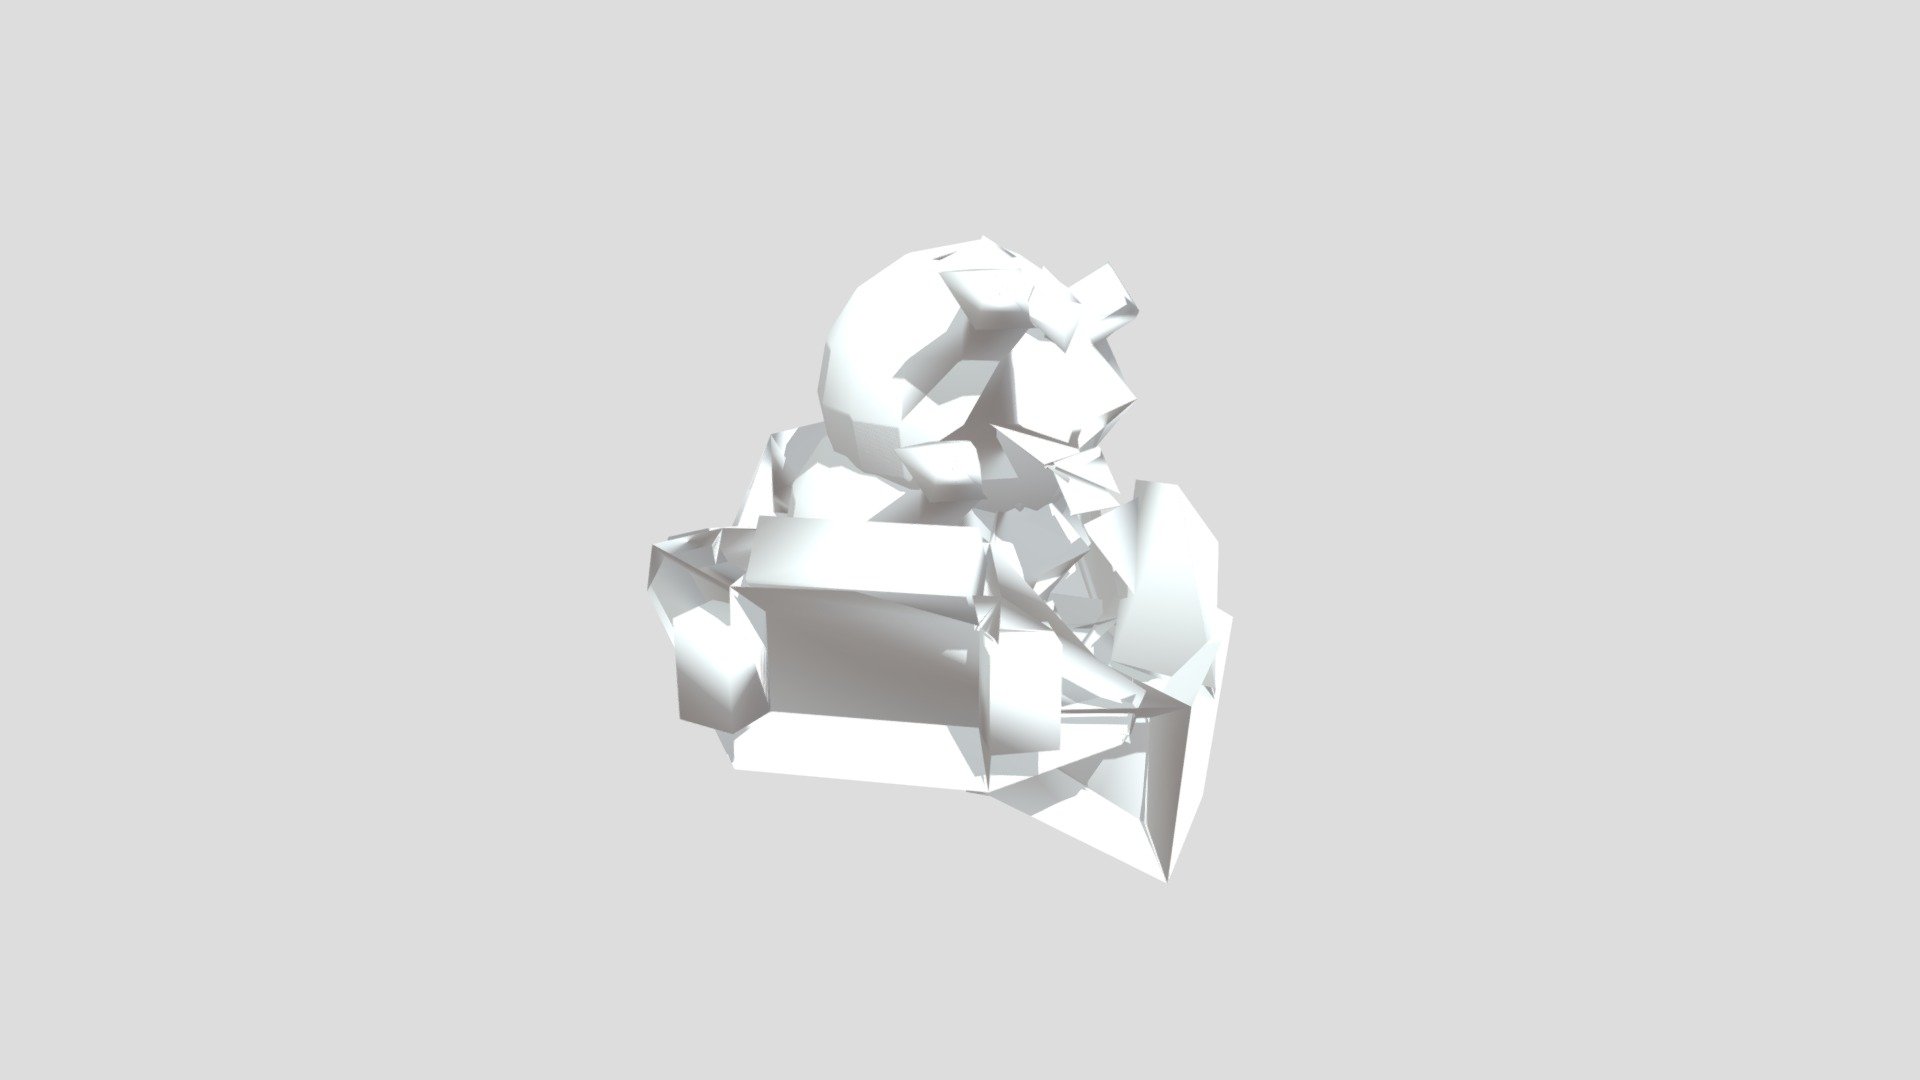 3D - 3D model by 0.22 [d773775] - Sketchfab